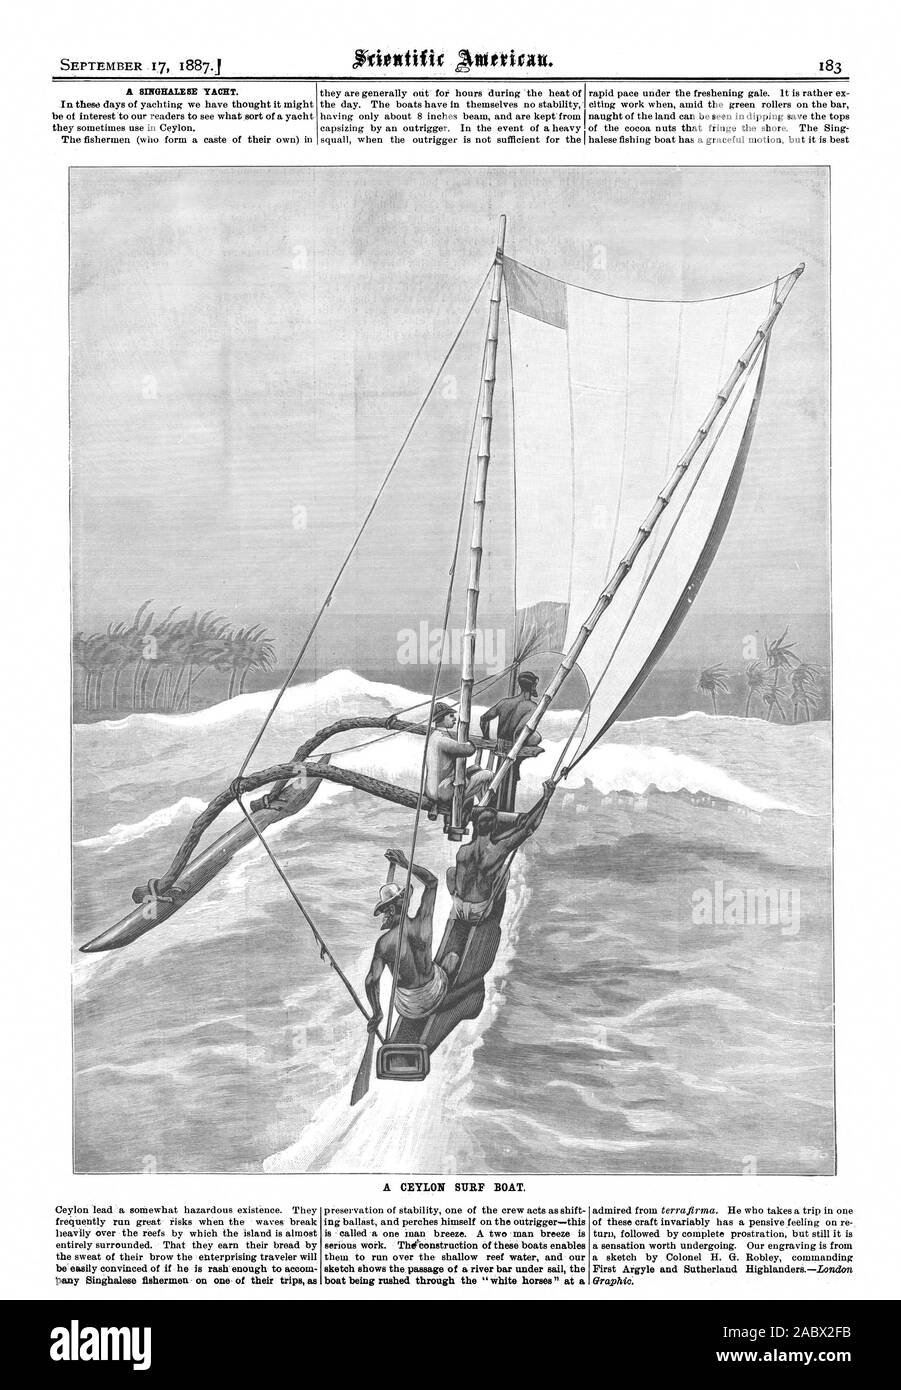 Eine SINGHALESISCHE YACHT. pany Singhalesischen Fischer auf einer ihrer Reisen als CEYLON BOOT SURF. Skizze zeigt den Durchgang eines River Bar unter Segeln das Boot durch die "weisse Pferde" am Cira. phic., Scientific American, 1887-09-17 gehetzt wird, Stockfoto